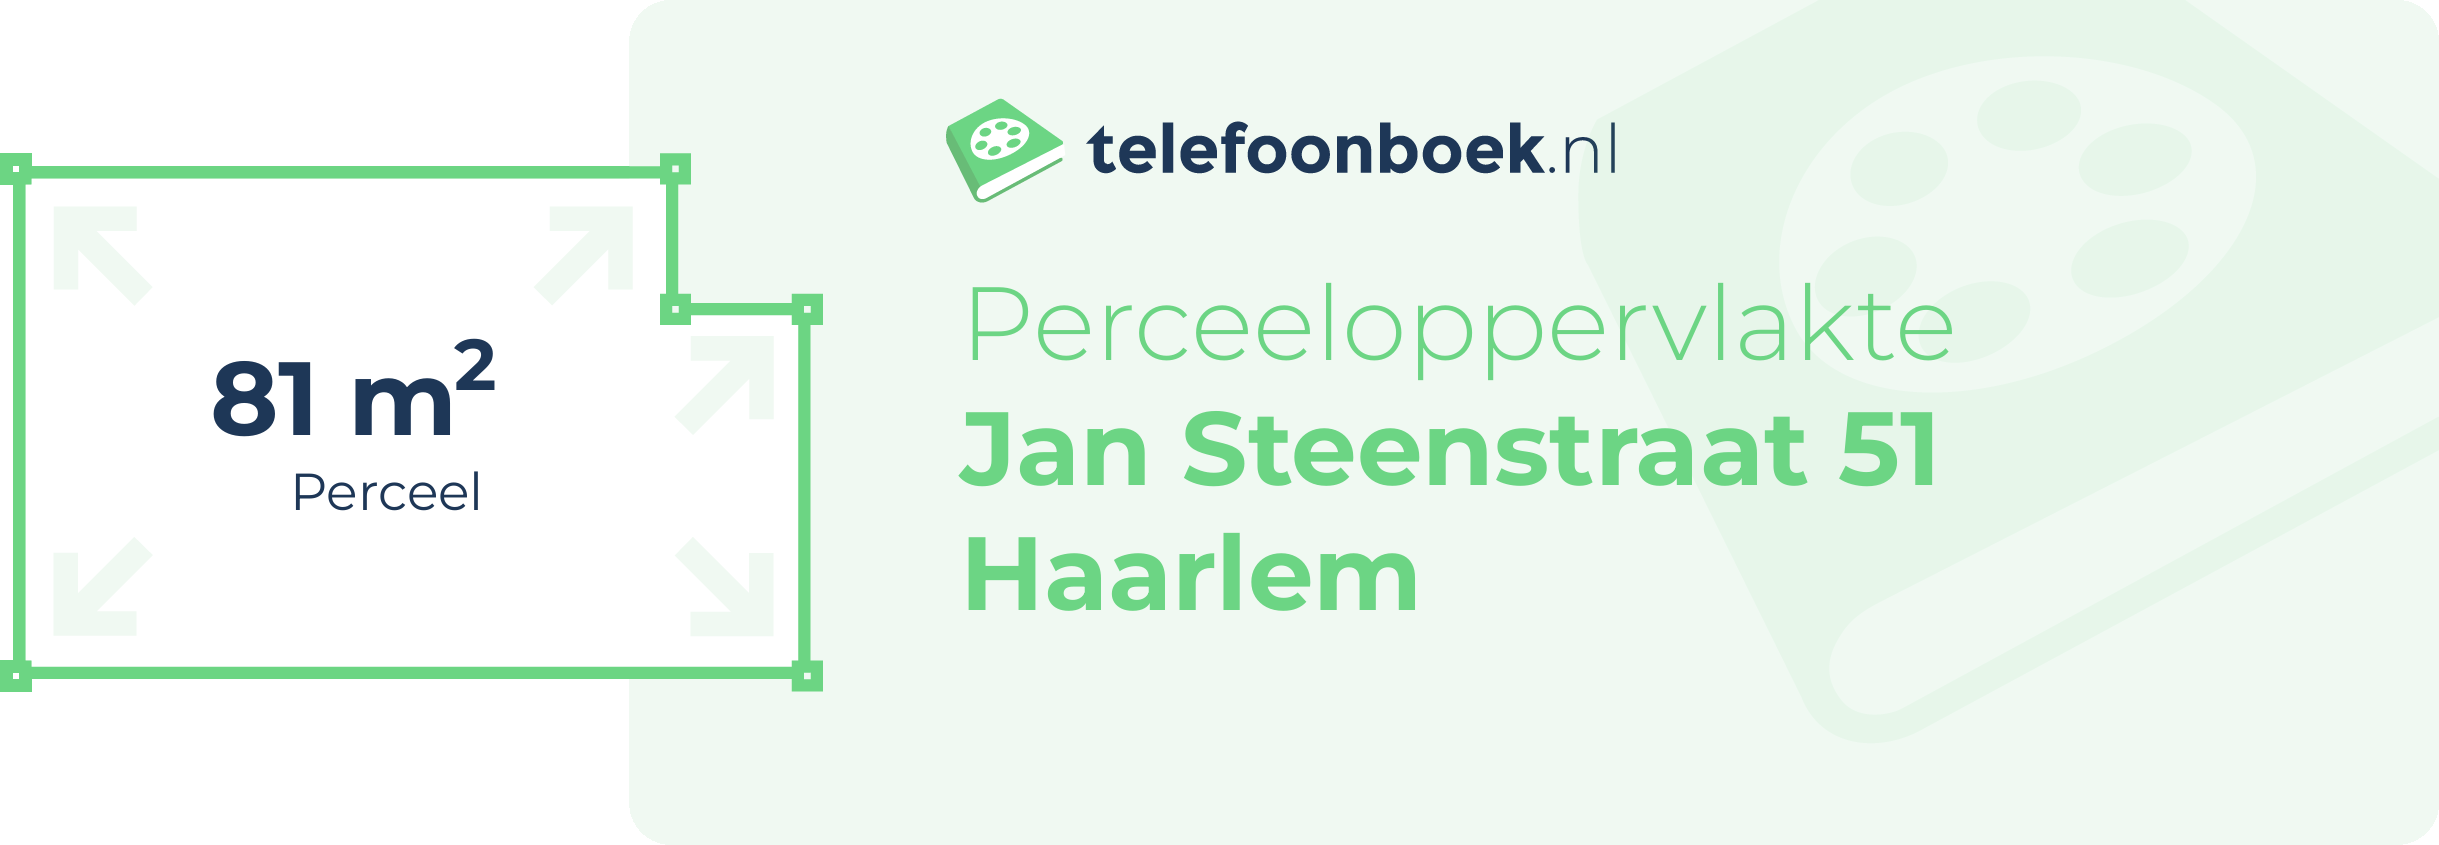 Perceeloppervlakte Jan Steenstraat 51 Haarlem